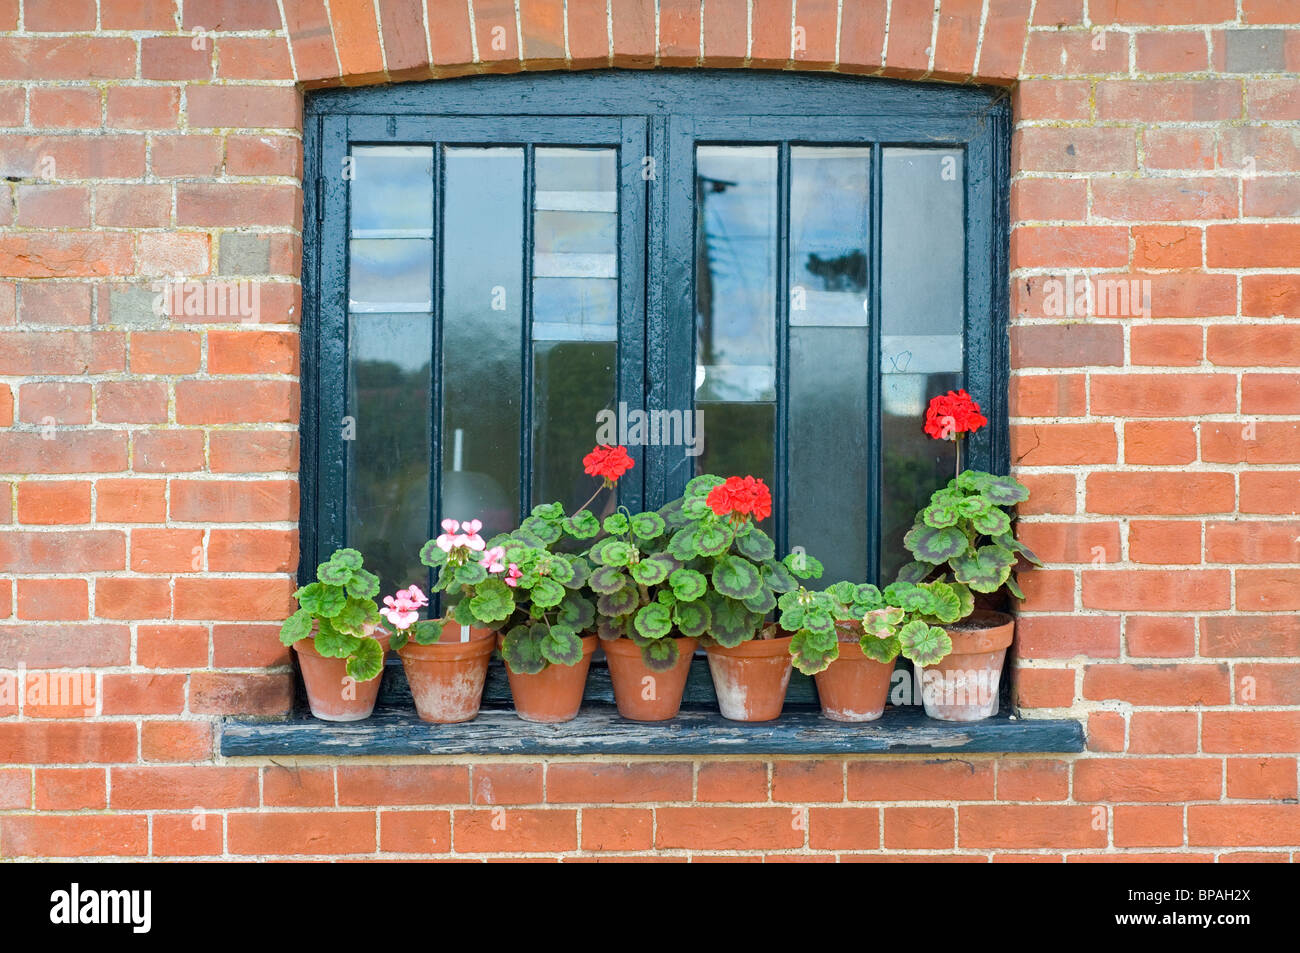 Une façade victorienne fenêtre avec pots en terre cuite de géraniums rouges et roses sur le rebord de la fenêtre Banque D'Images